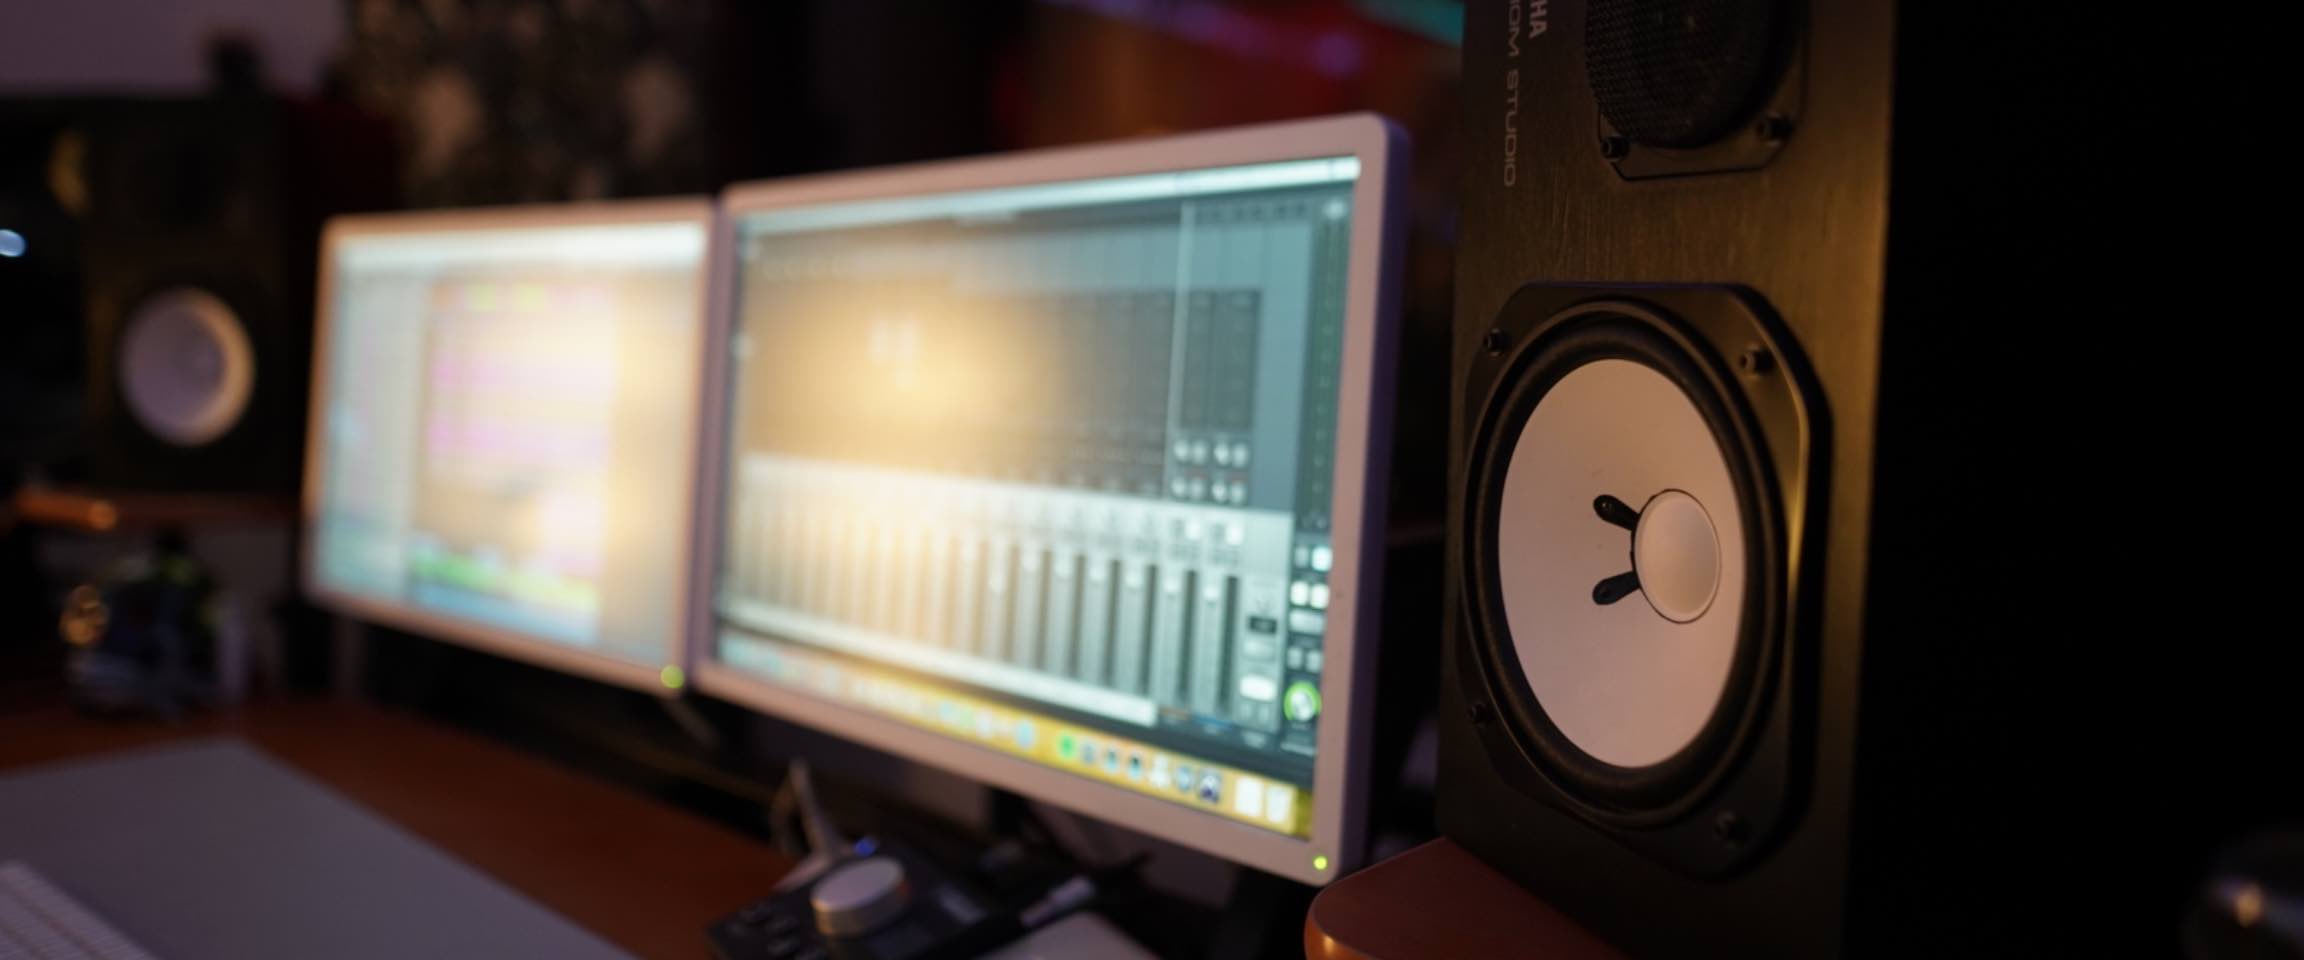 Recording studio equipment